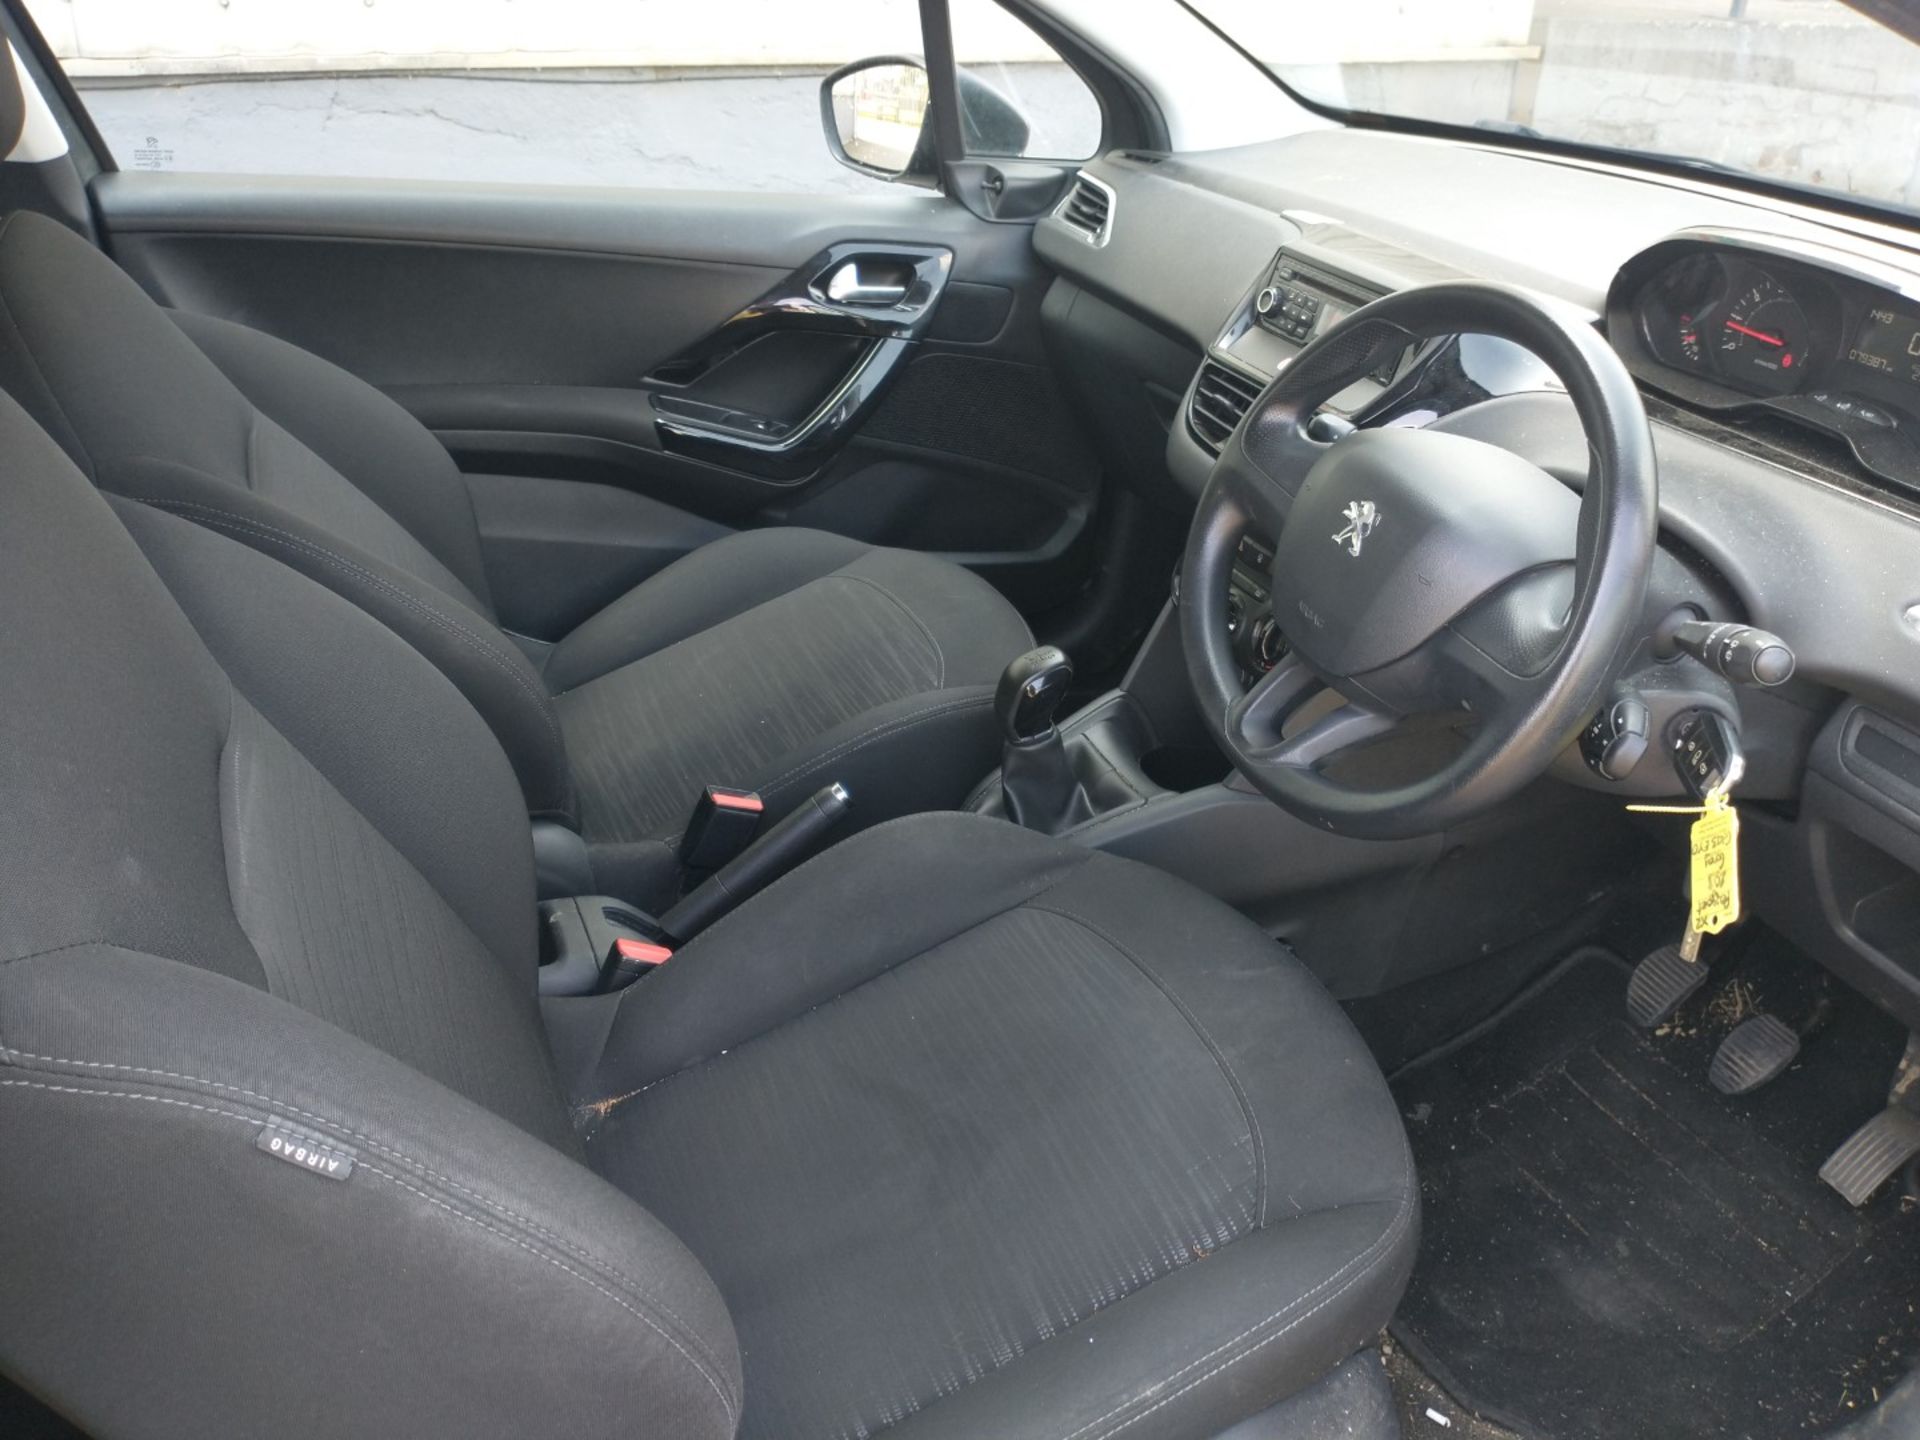 2013 Peugeot 208 Access 3dr hatchback 1.0 petrol - CL505 - Ref: VVS030 - NO VAT ON THE HAMMER - Loca - Image 9 of 18